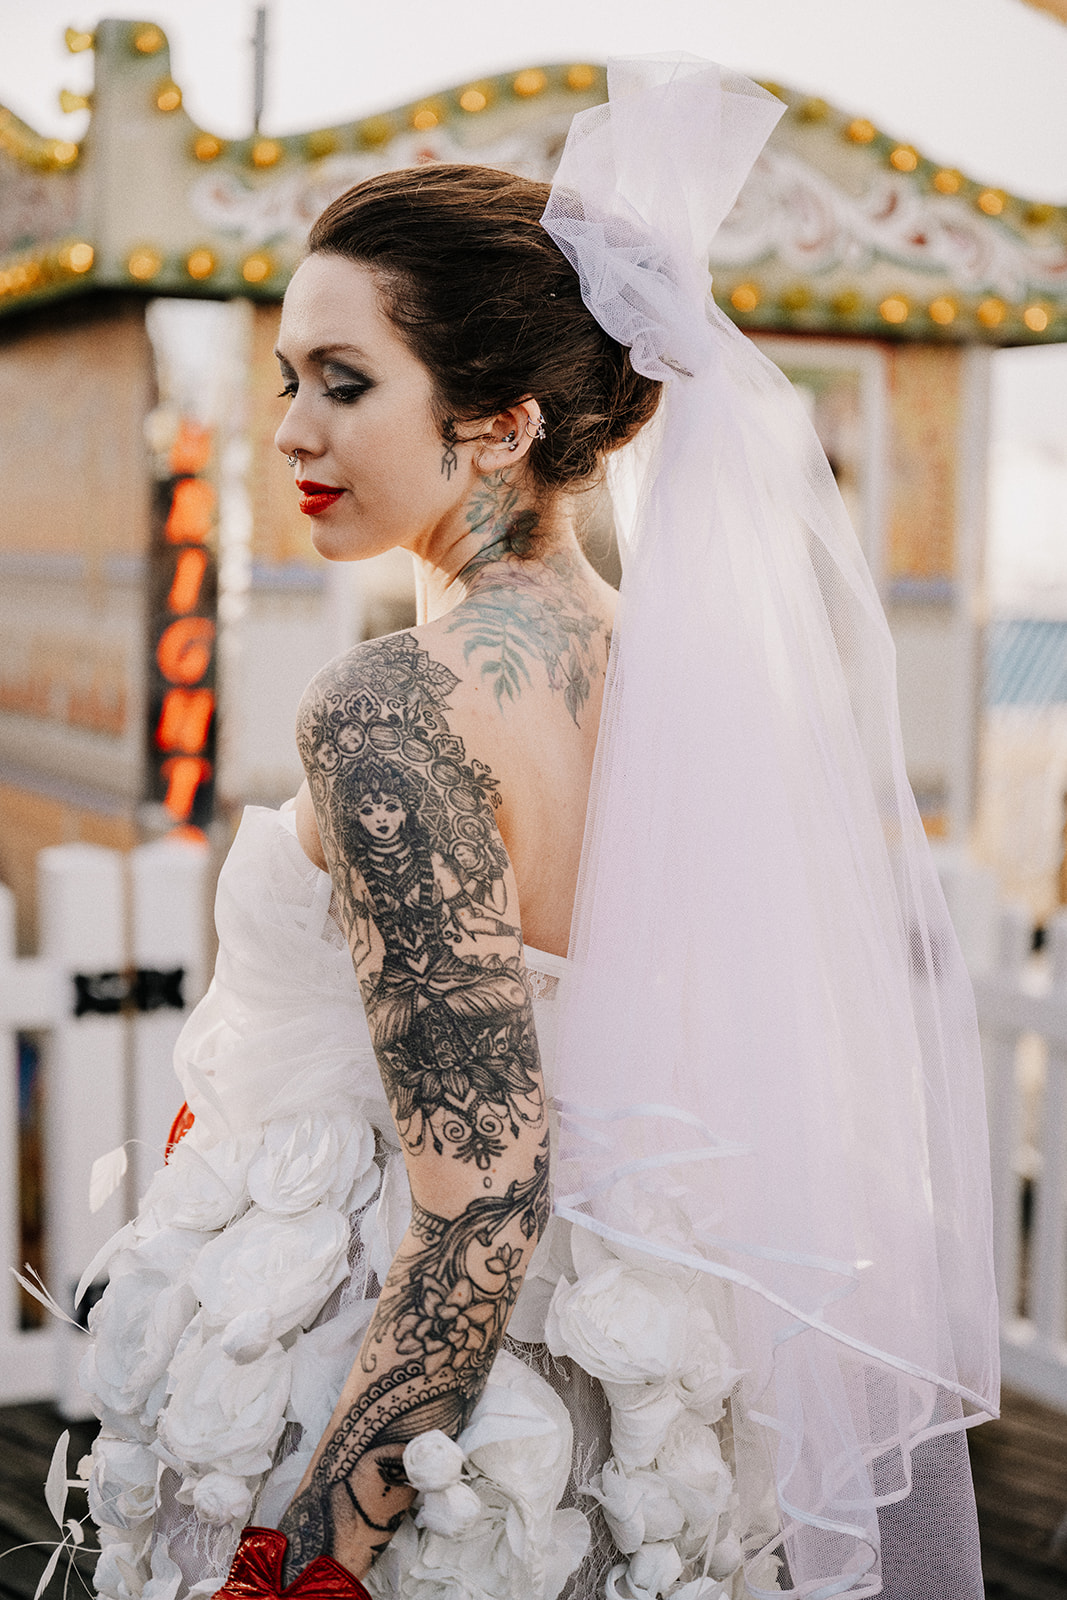 A tattoed bride in a wedding dress